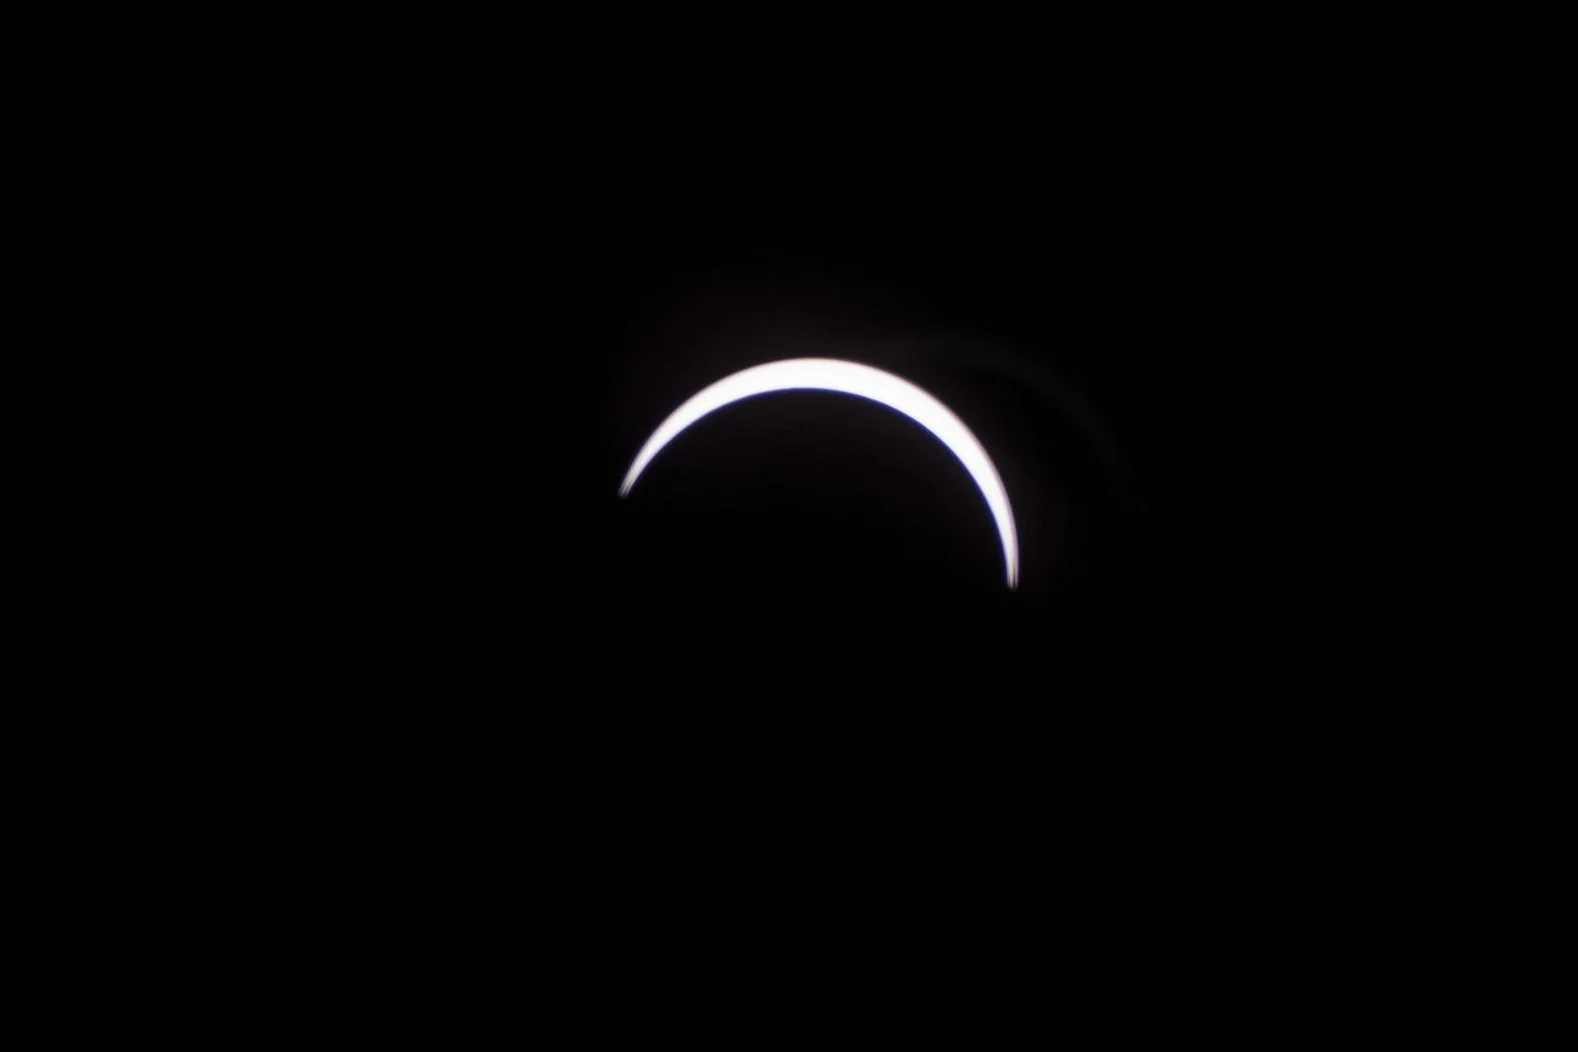 Eclipse NASA